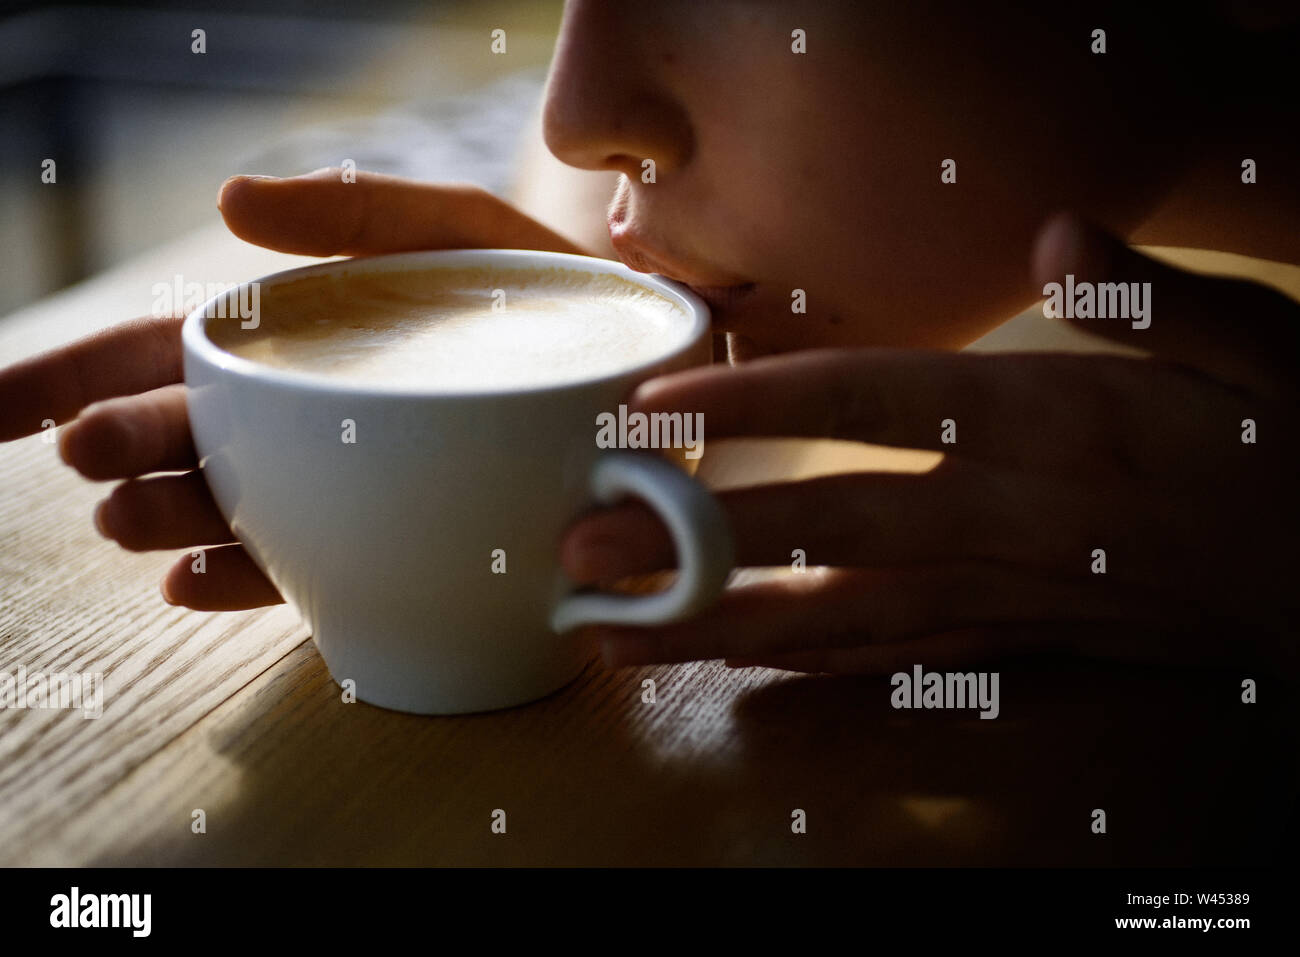 Frische am Morgen Kaffee mit Milch und Sahne aufschäumen. Mädchen Duft Aroma  Coffee Cup. Perfekte morgen mit den besten Kaffee im Cafe oder im Café und  Getränken entspannen Stockfotografie - Alamy